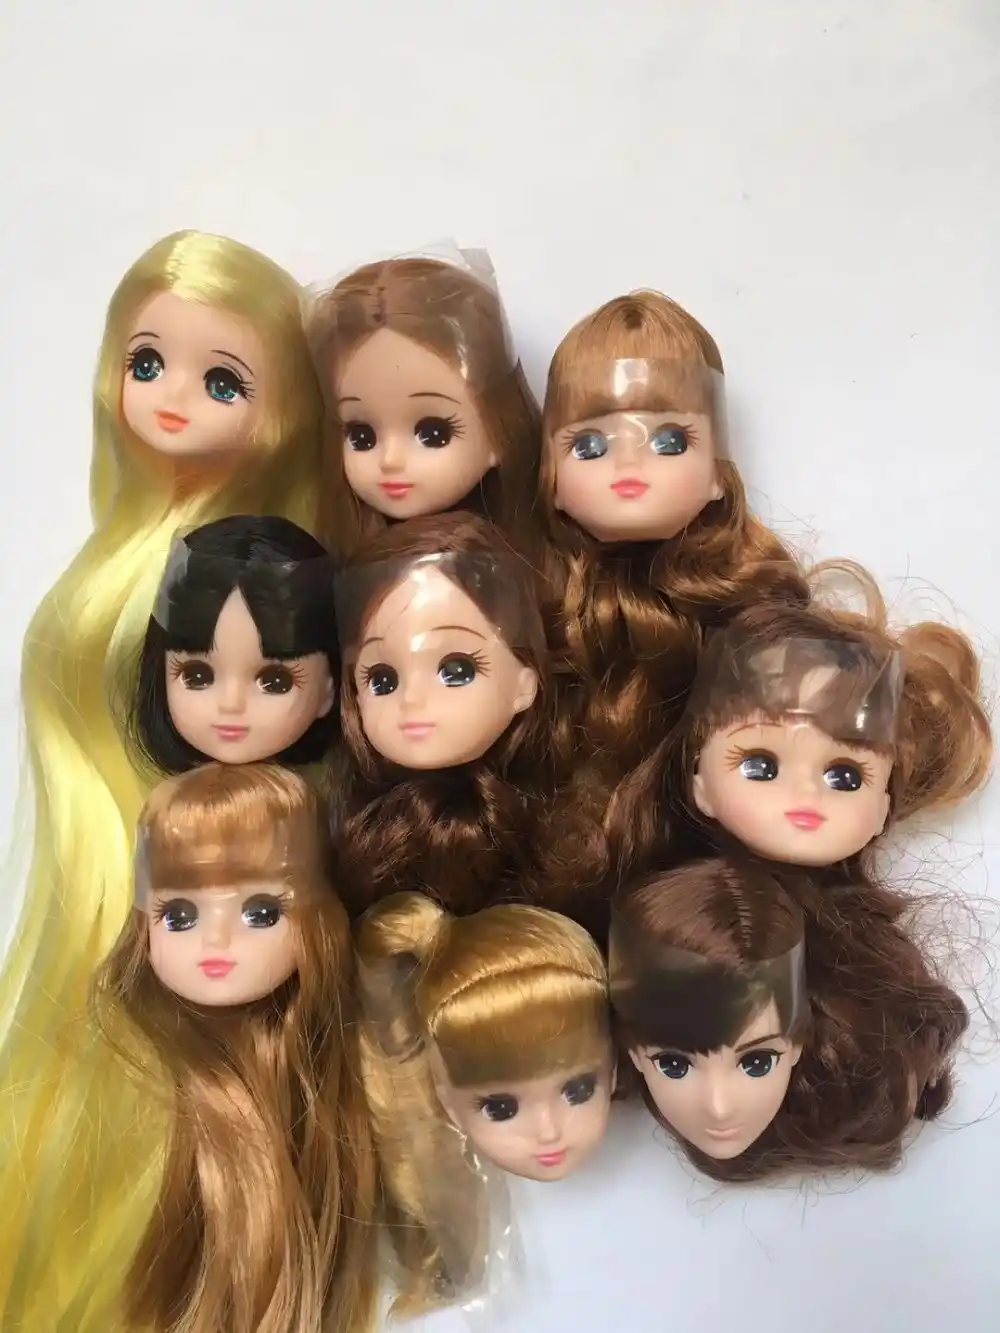 長い髪リカちゃん人形ヘッドショートロング曲線髪ソフトゴールド黒黄色の髪人形ヘッド少年少女の人形部品 Diy アクセサリーおもちゃ Dolls Aliexpress